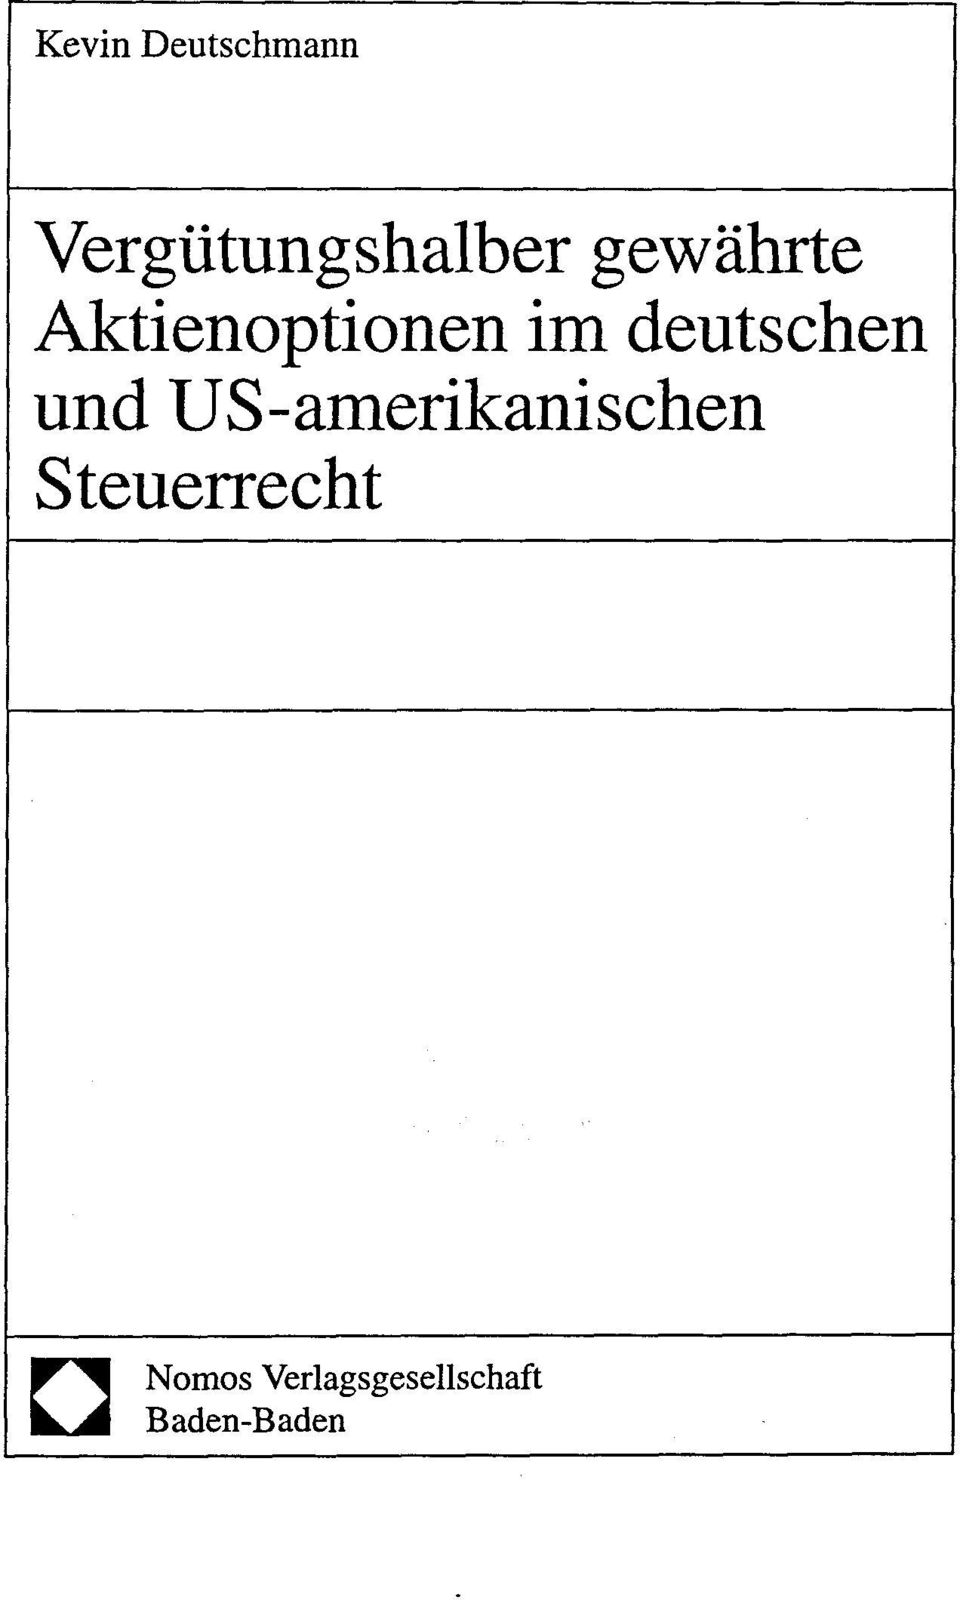 deutschen und US-amerikanischen